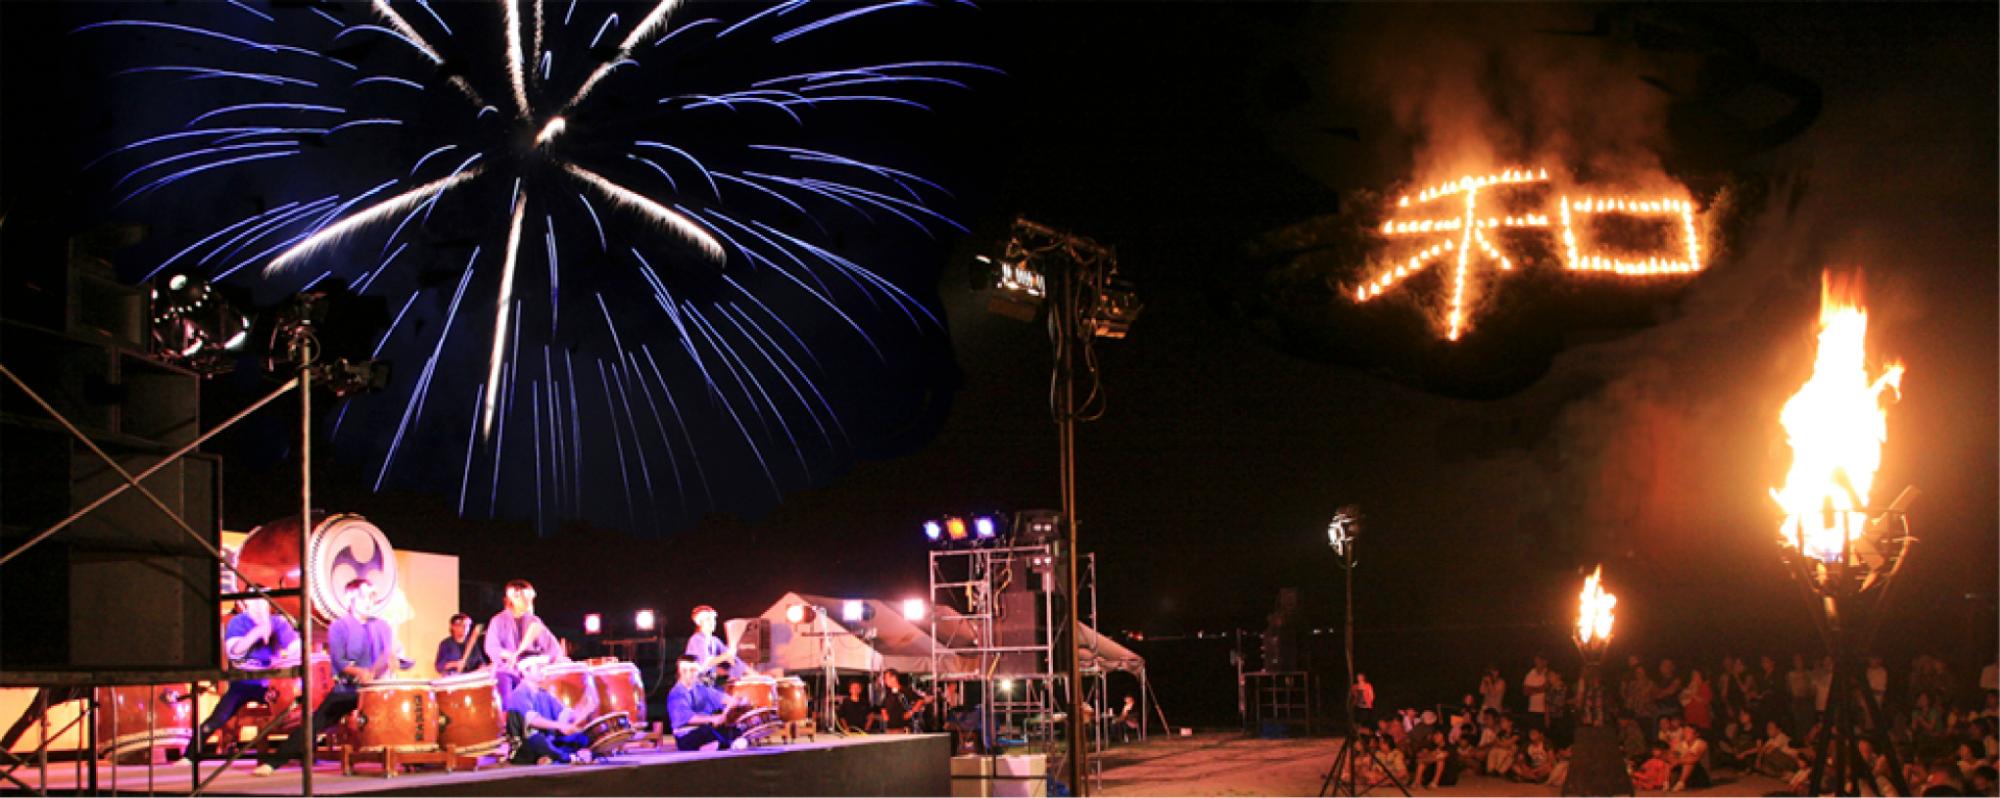 高い位置に「和」の火文字、空には大きな青い花火が浮かびあがっており、地上の舞台で法被を着た人達が太鼓を演奏を行っている様子を大勢の参加者が見ているお祭りの様子の写真